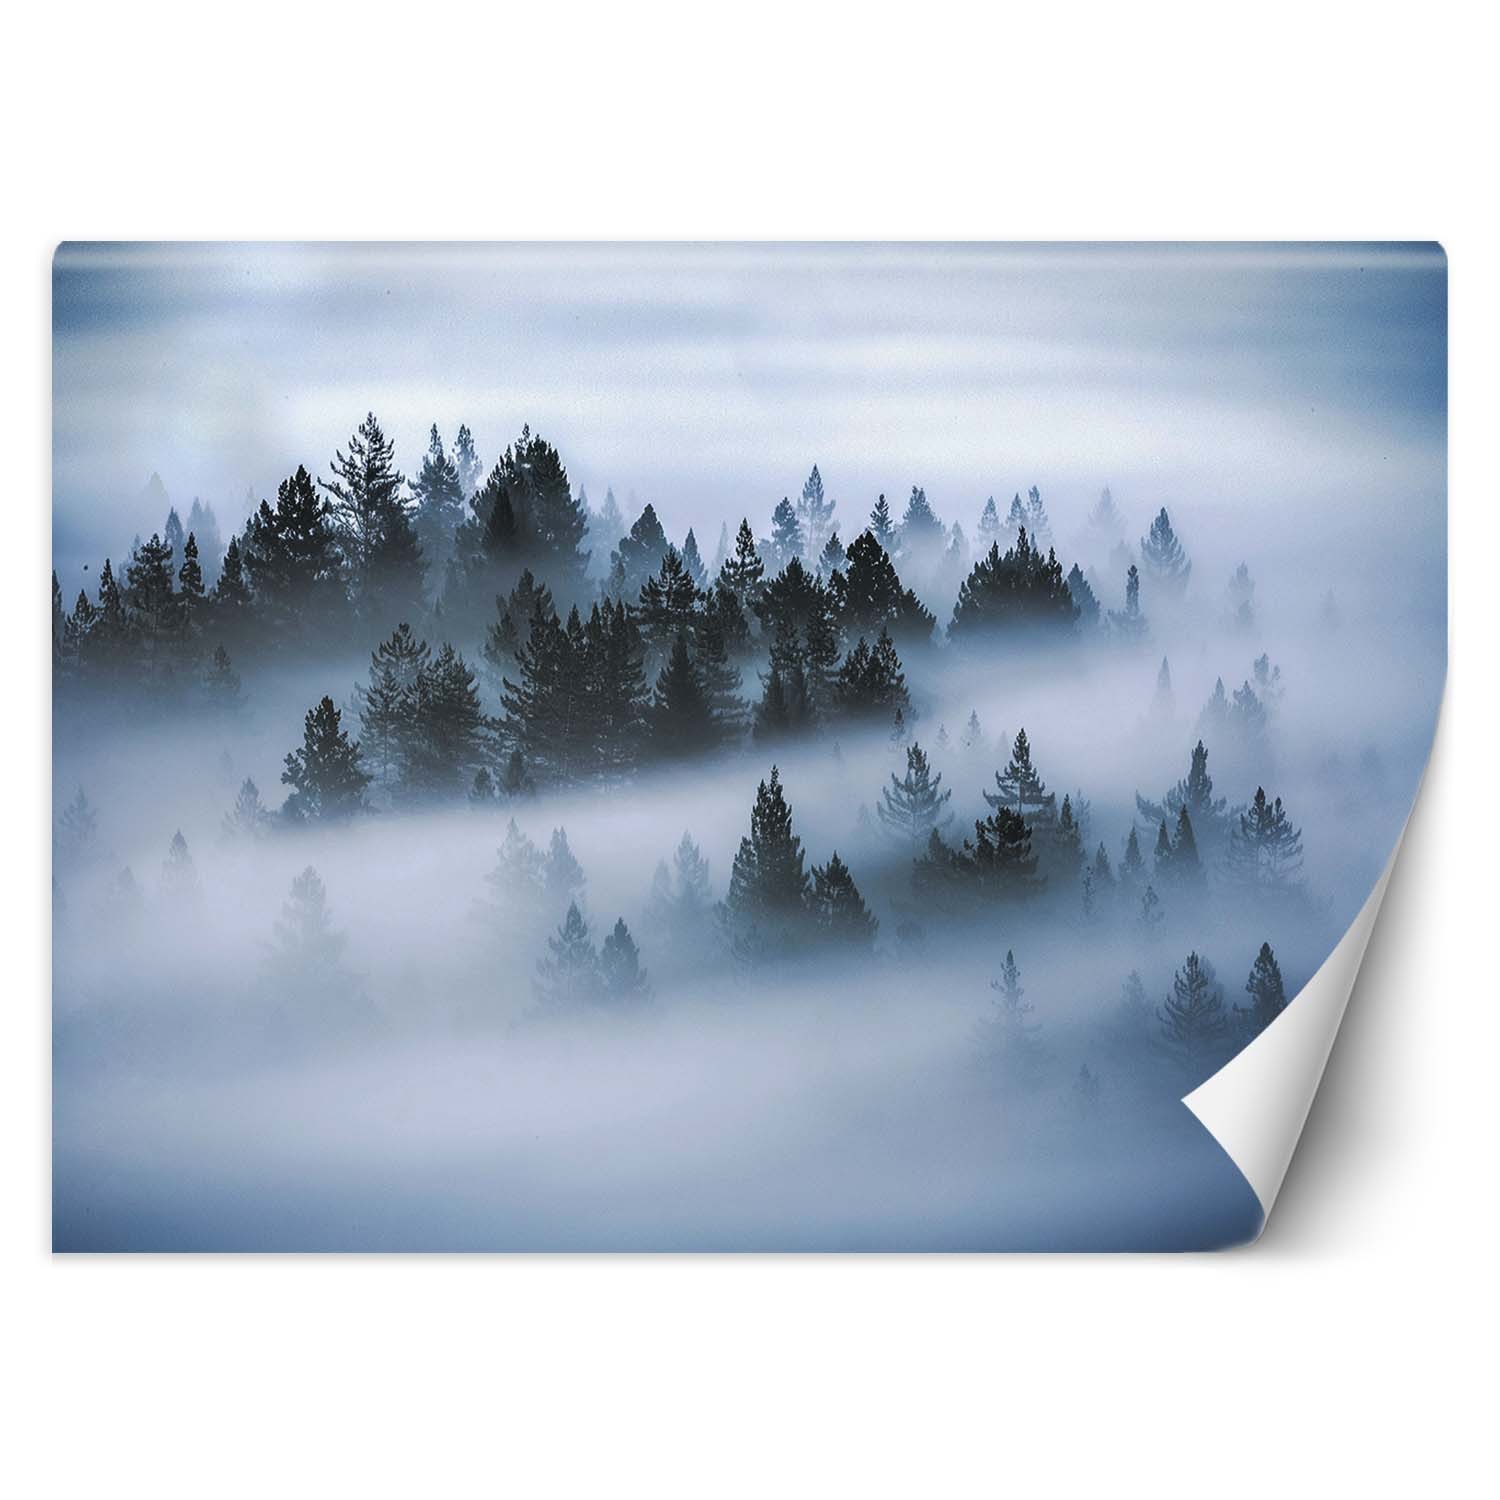 Trend24 – Behang – Bos In De Mist – Behangpapier – Fotobehang Natuur – Behang Woonkamer – 200x140x2 cm – Incl. behanglijm